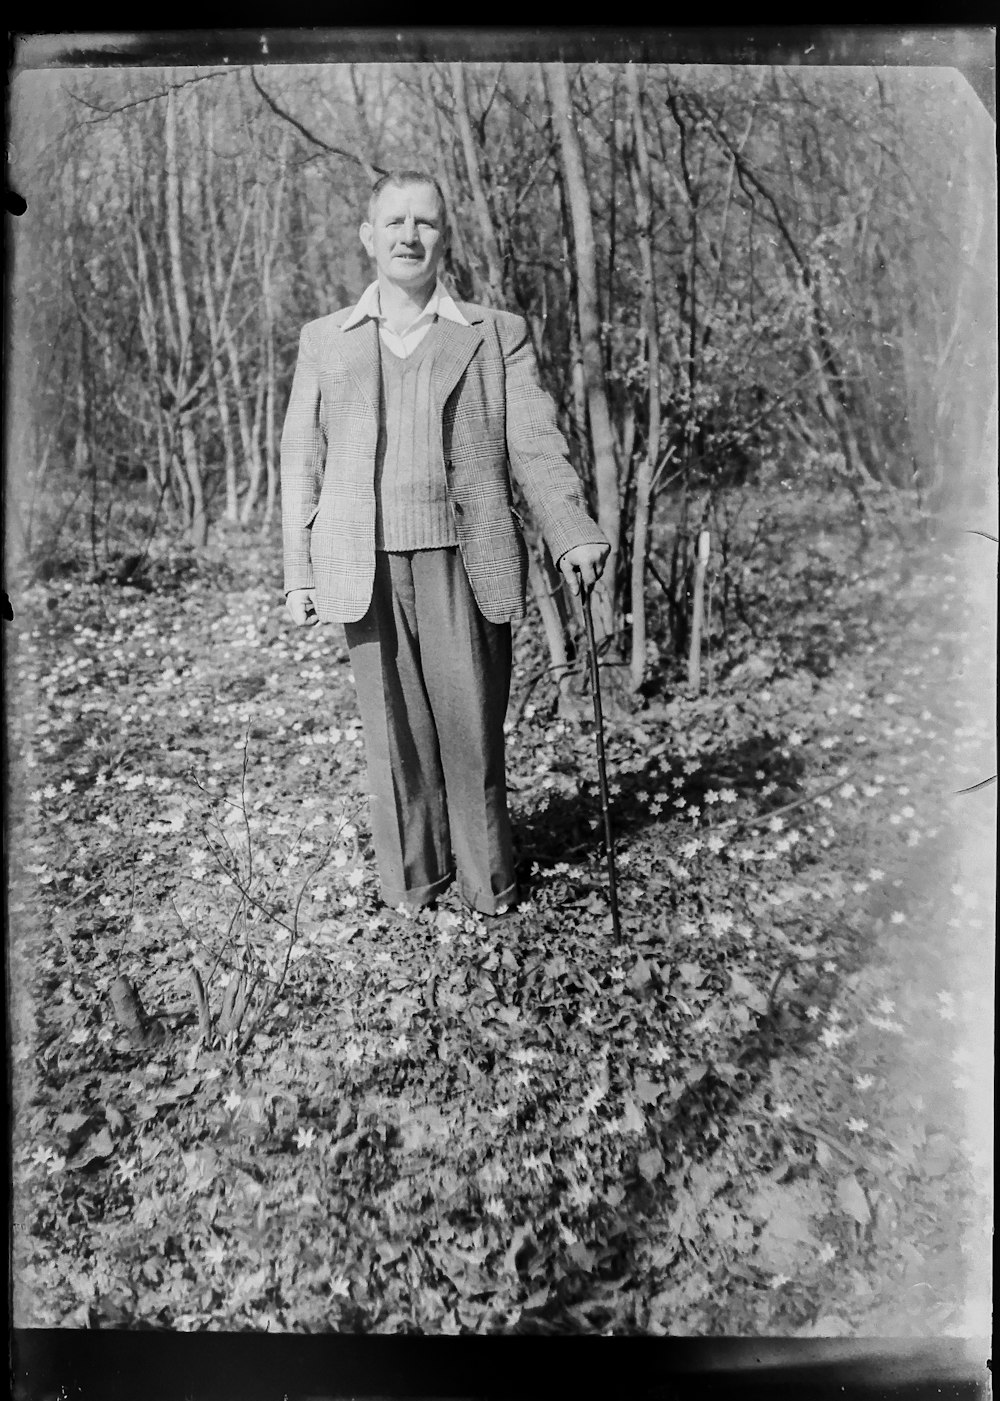 fotografia in scala di grigi dell'uomo in piedi vicino agli alberi